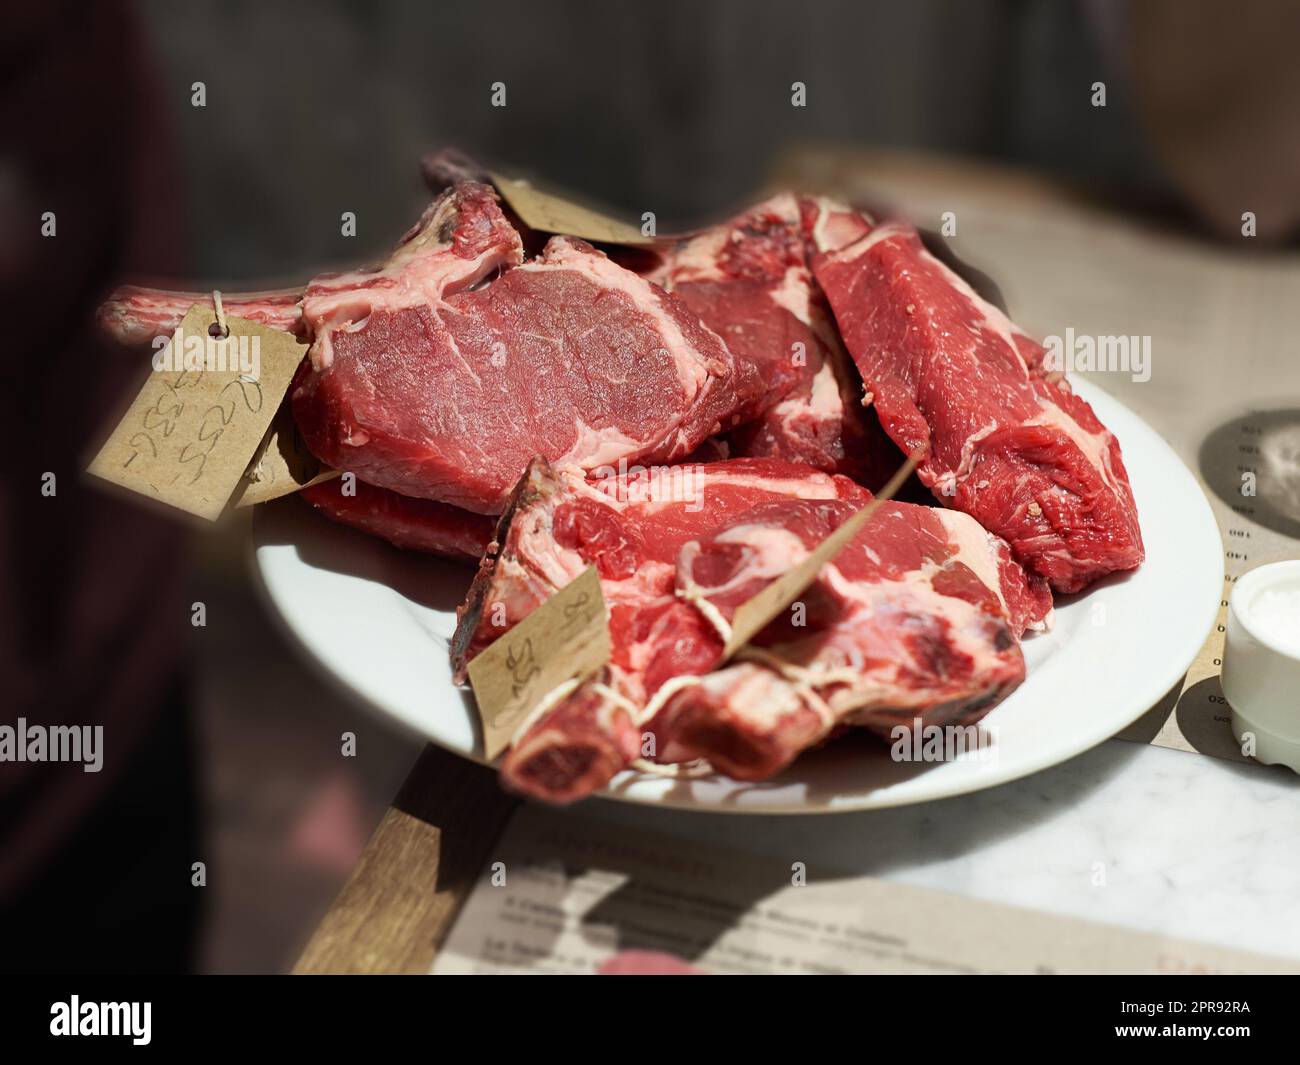 Vue de dessus de la viande en cours de préparation pour être vendue à un boucher. Délicieux steak de bœuf en cours de transformation et de tri pour faire le déjeuner ou le dîner dans une cuisine à la maison. Nourriture riche en protéines provenant d'une ferme Banque D'Images